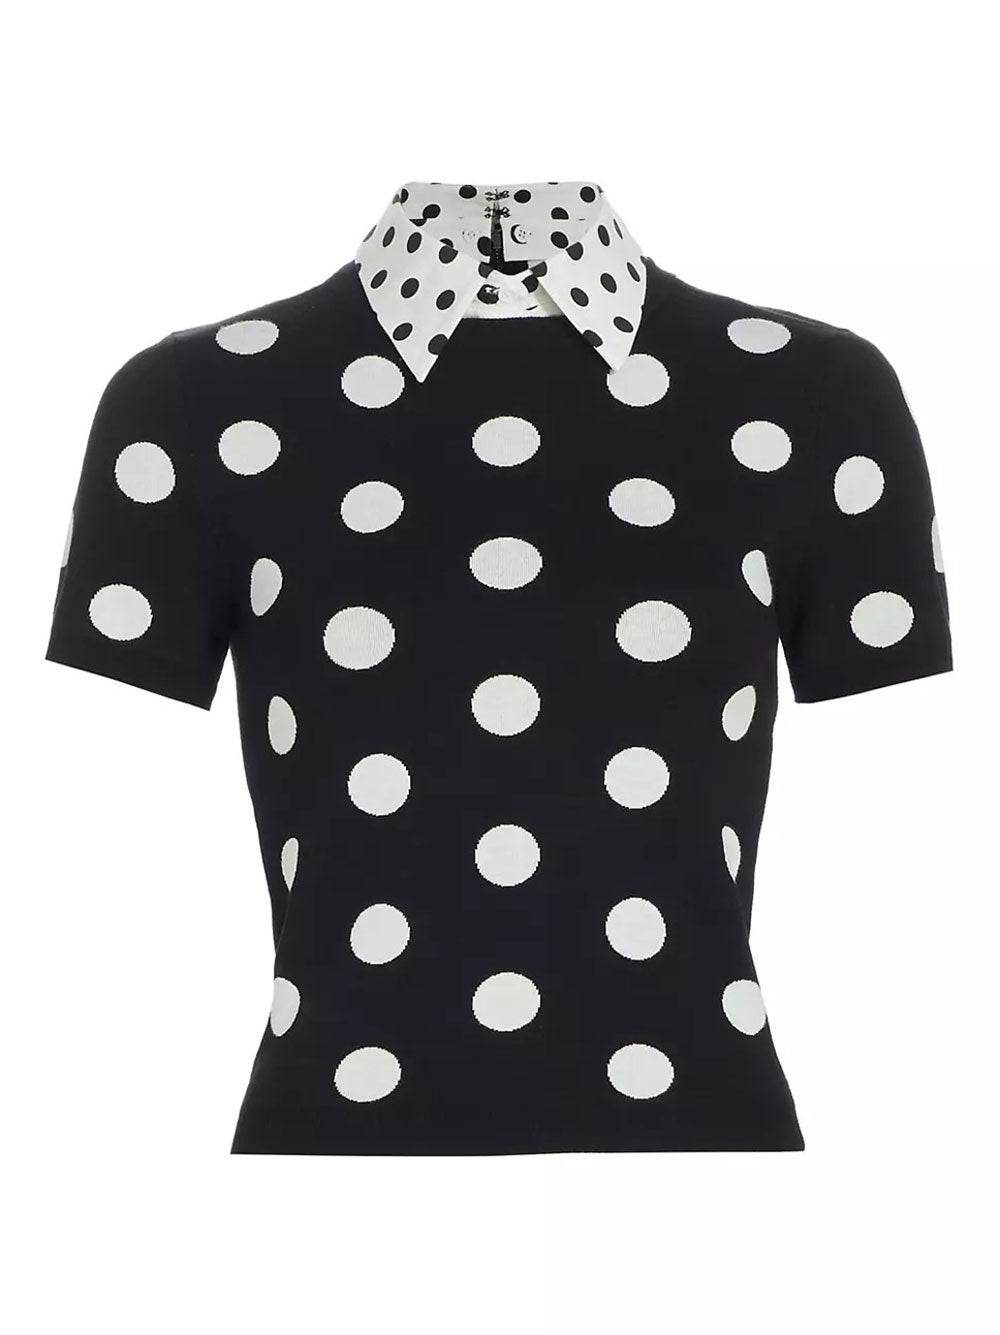 Alice + Olivia Aster Collared Pullover Top in Black/Soft White Polka Dot